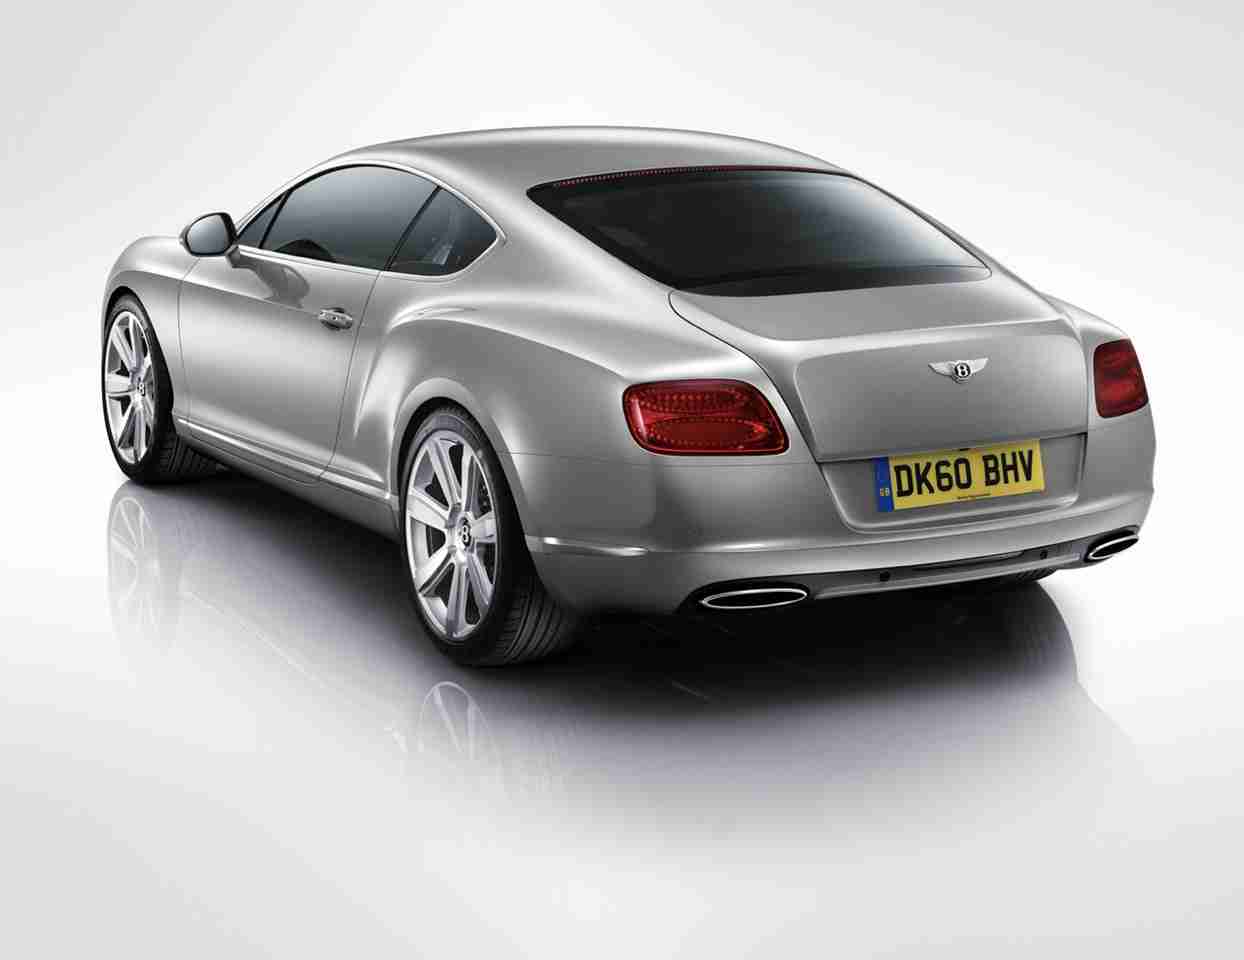 2010 Bentley Continental GT Car Review by Car Expert Lauren Fix